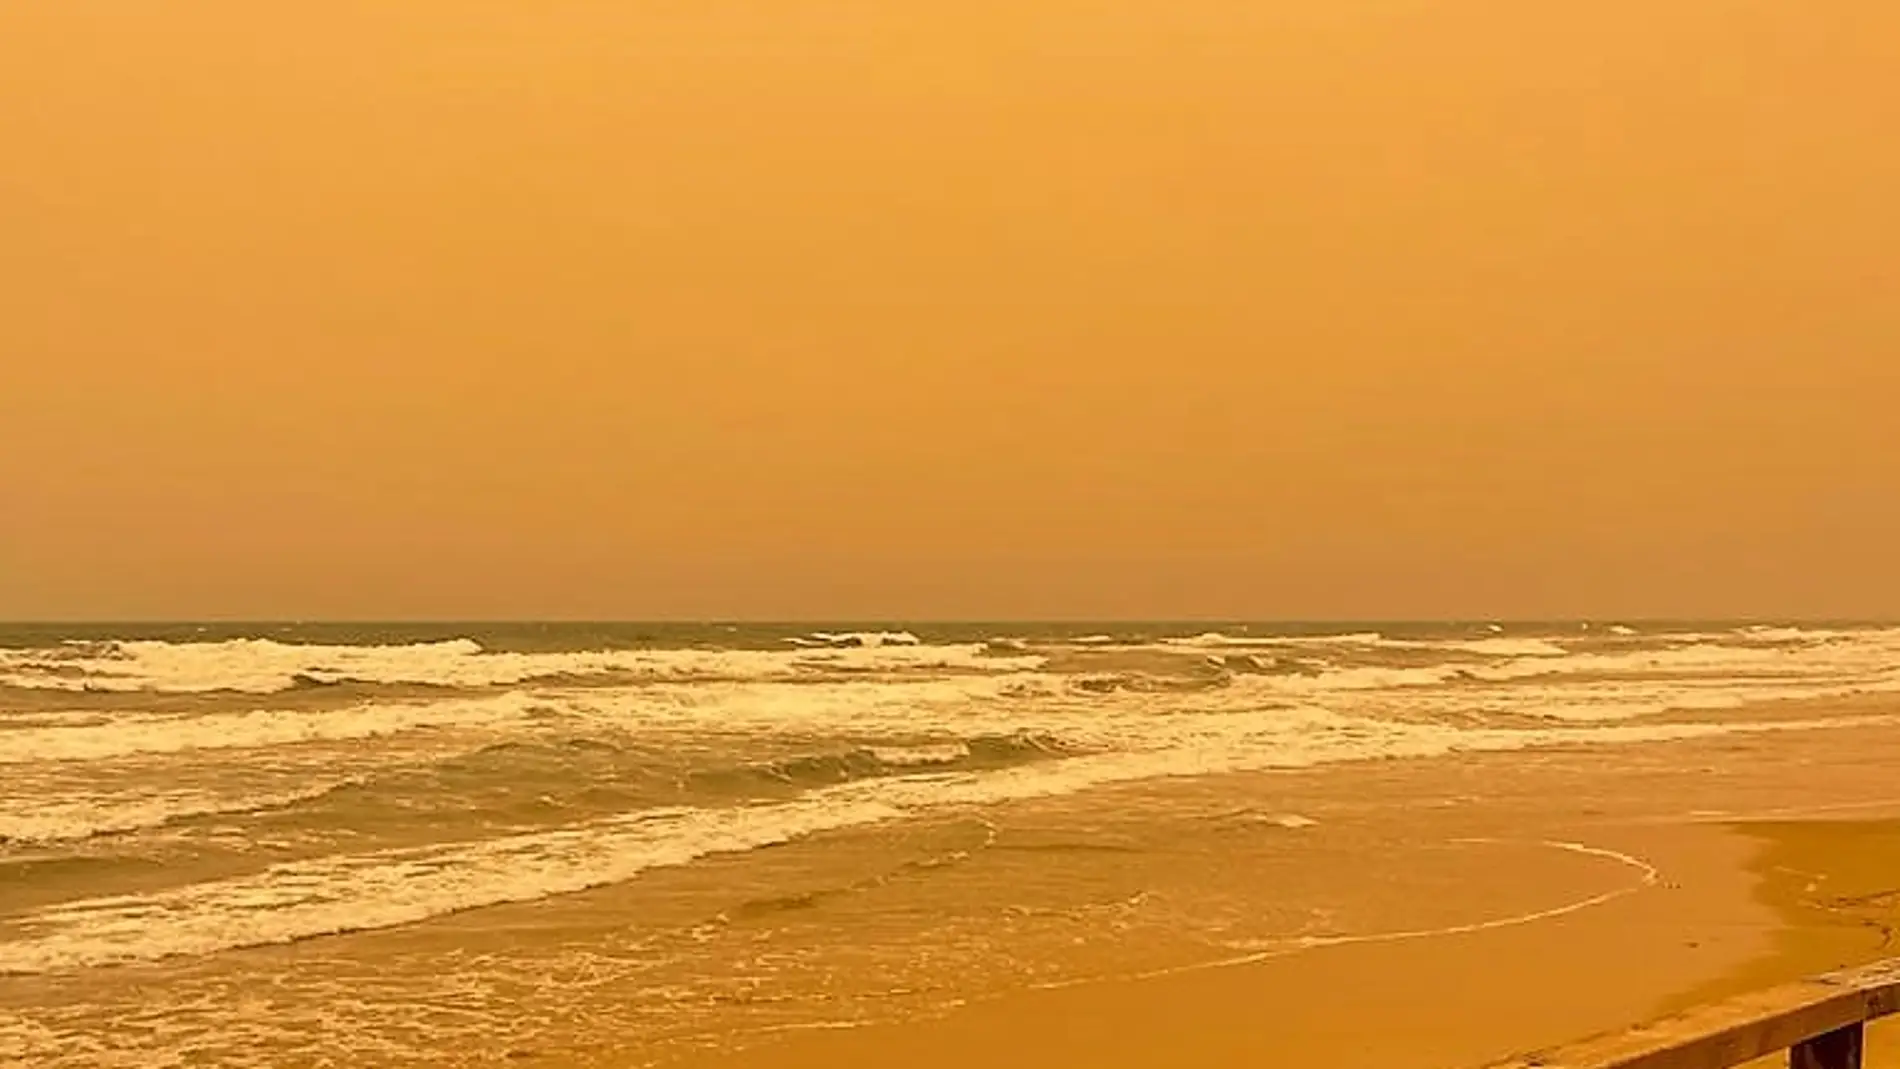 La calima deja el cielo de color sepia en la playa de Arenales del Sol de Elche